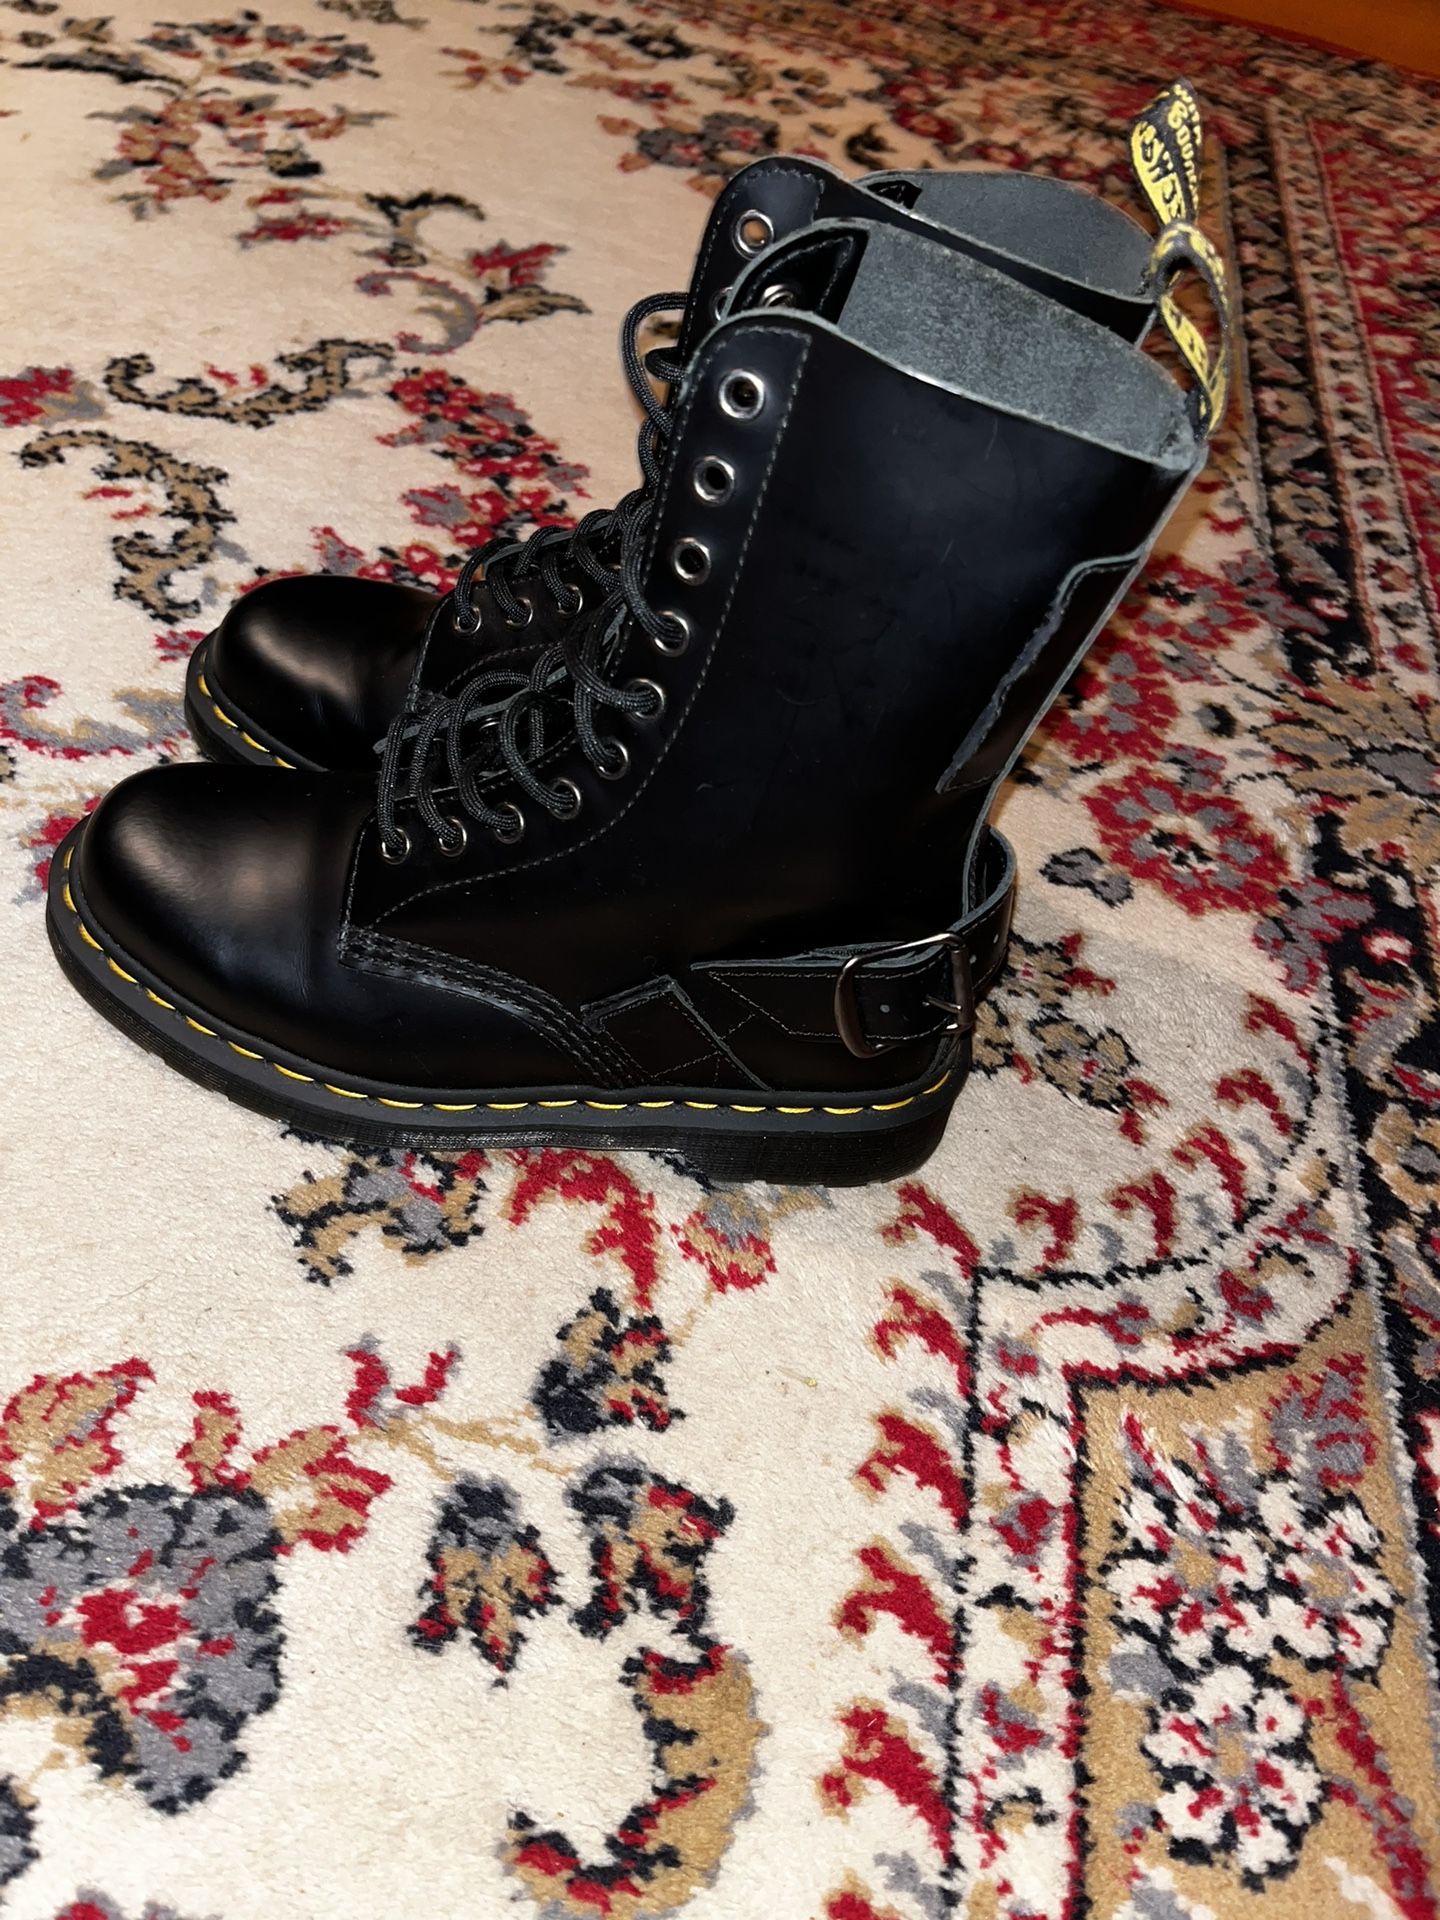 Dr Marten Combat Style Boots  Black  Size 7